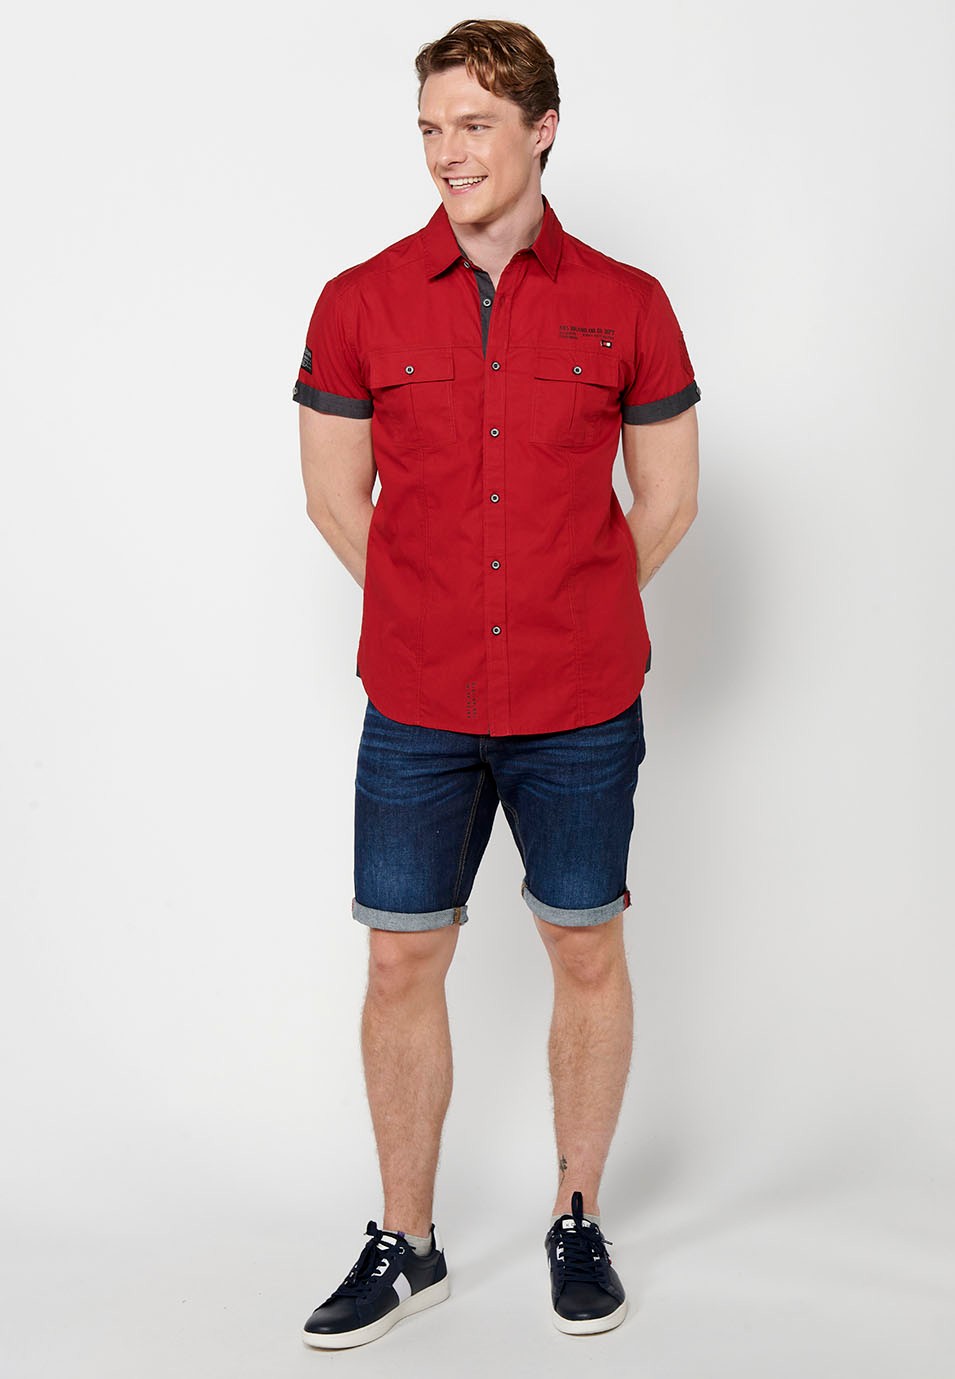 Kurzärmliges Baumwollhemd mit Knopfverschluss vorne und Pattentaschen vorne in der Farbe rot für Herren